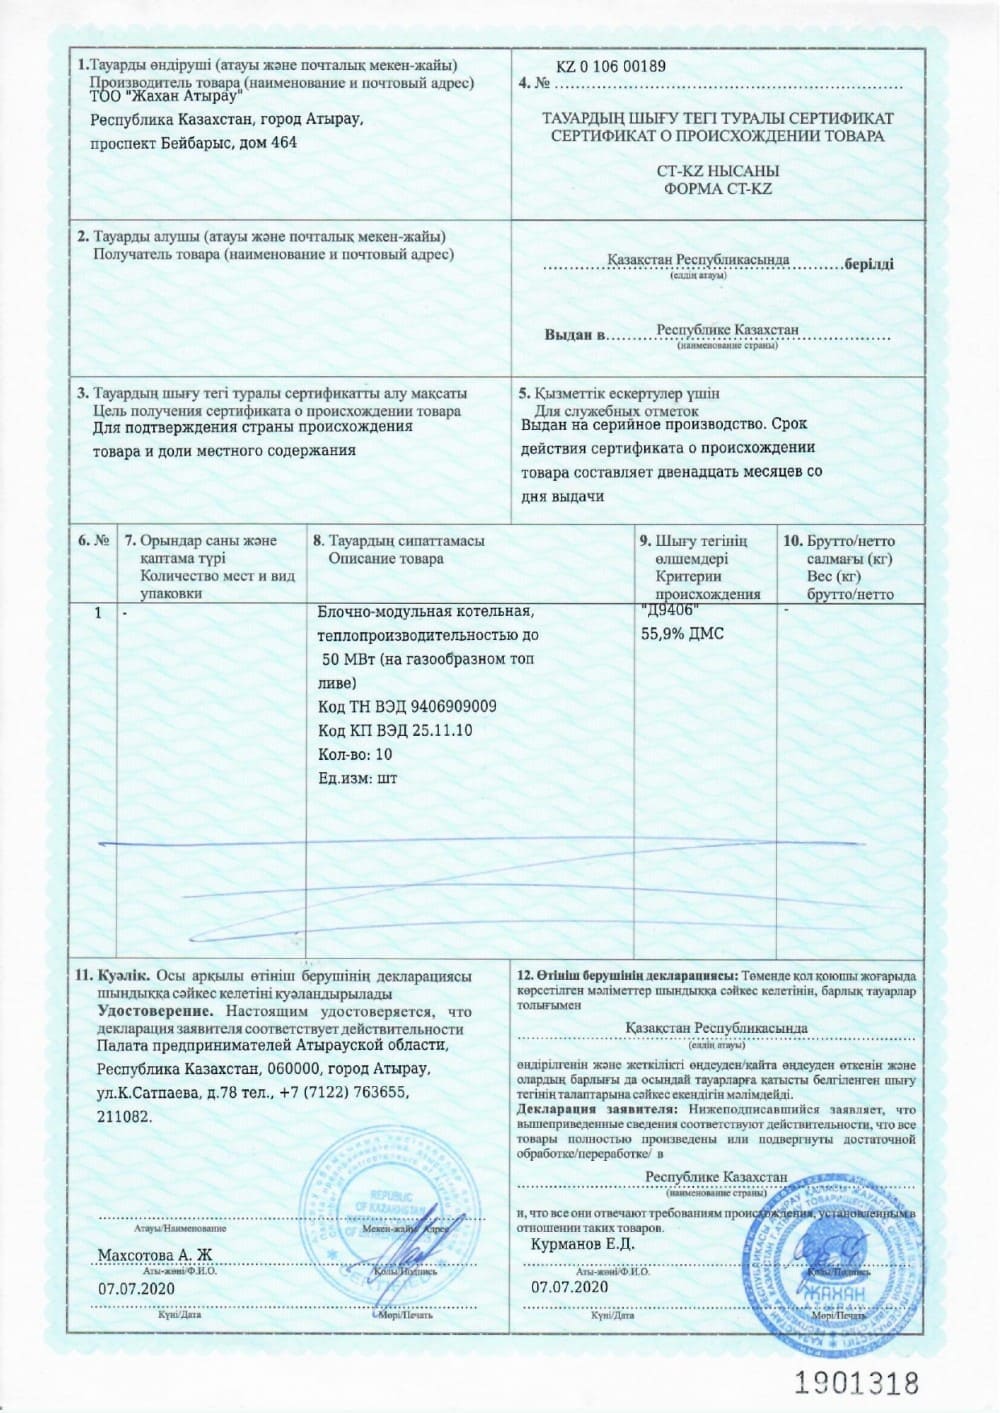 сертификат о происхождения товаров